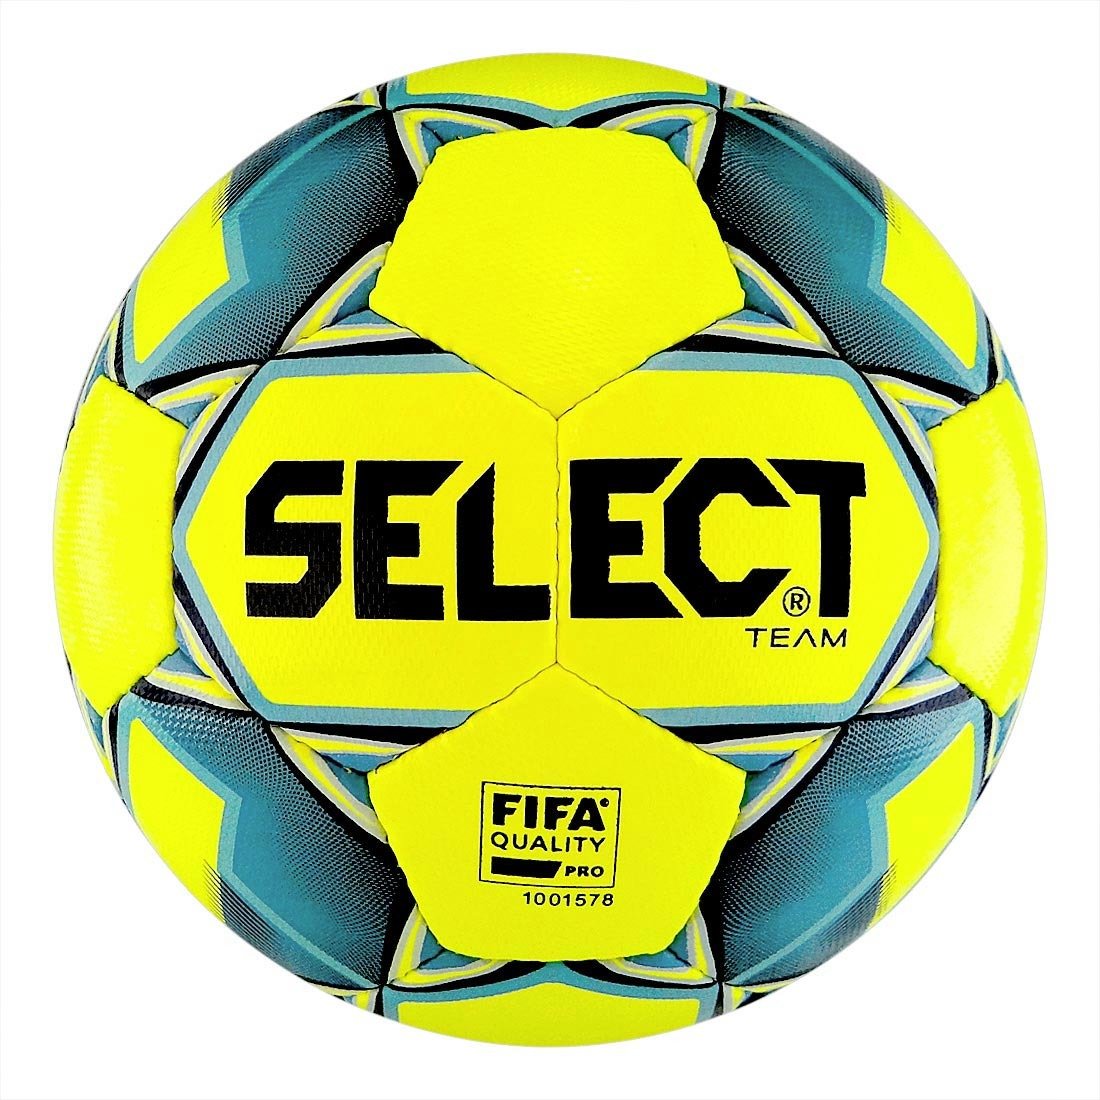 Футбольный мяч select. Мяч Селект 4 футзал. Мяч футбольный select Team FIFA Basic. Mikasa футбольный мяч бирюзовый. Select 815411 552.